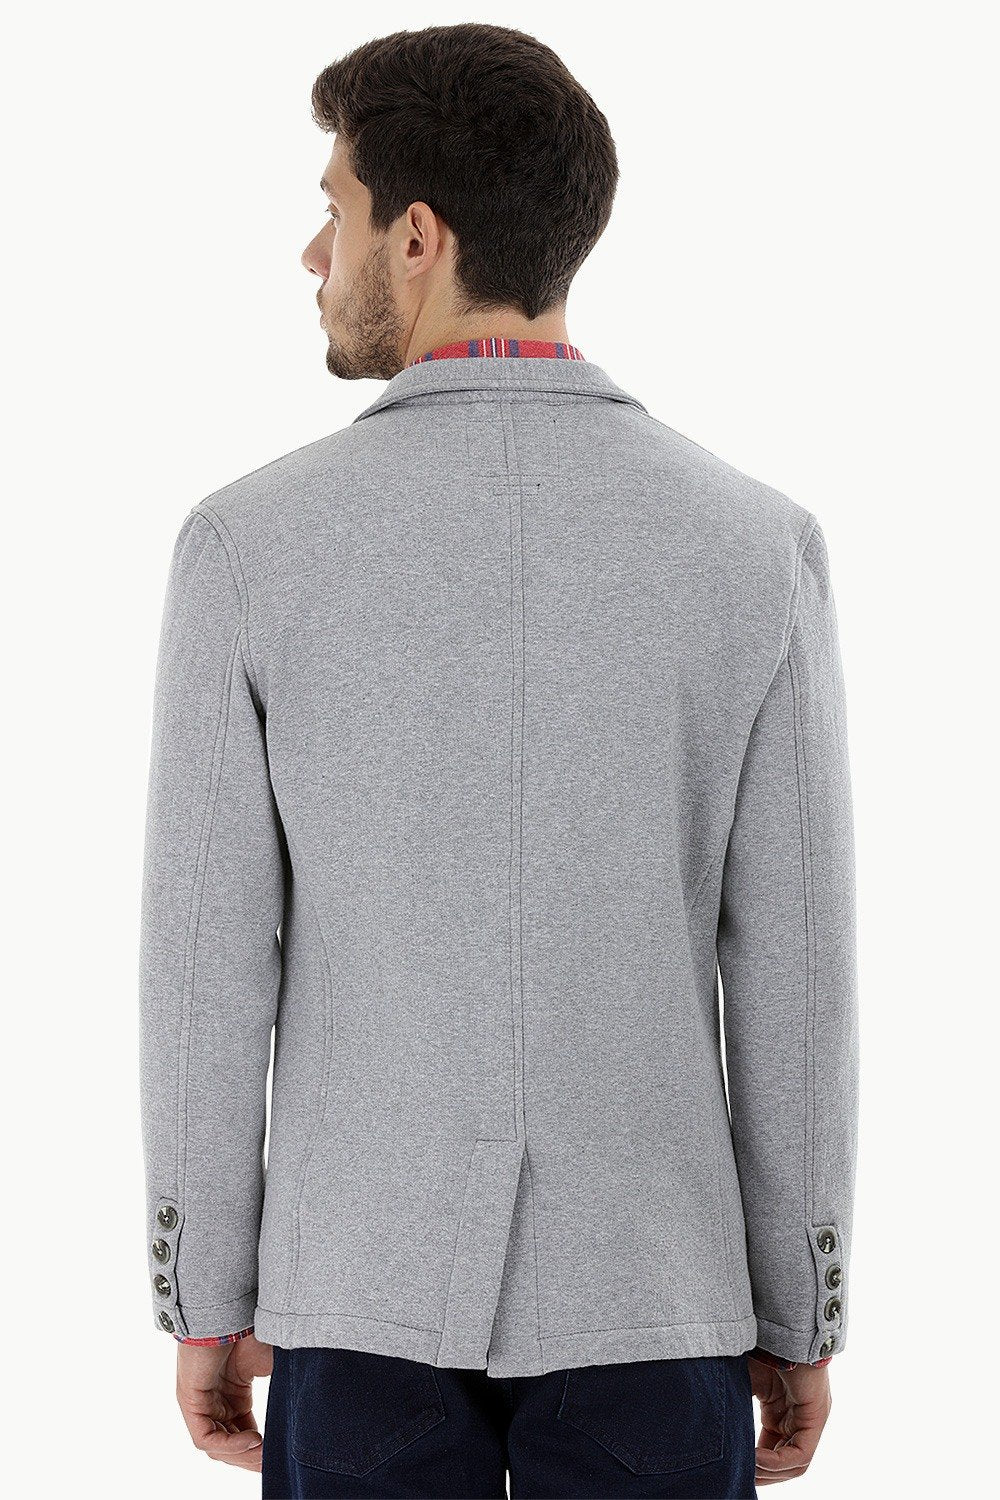 Buy Online Concrete Grey 3 Button Fleece Blazer for Men Online at Zobello